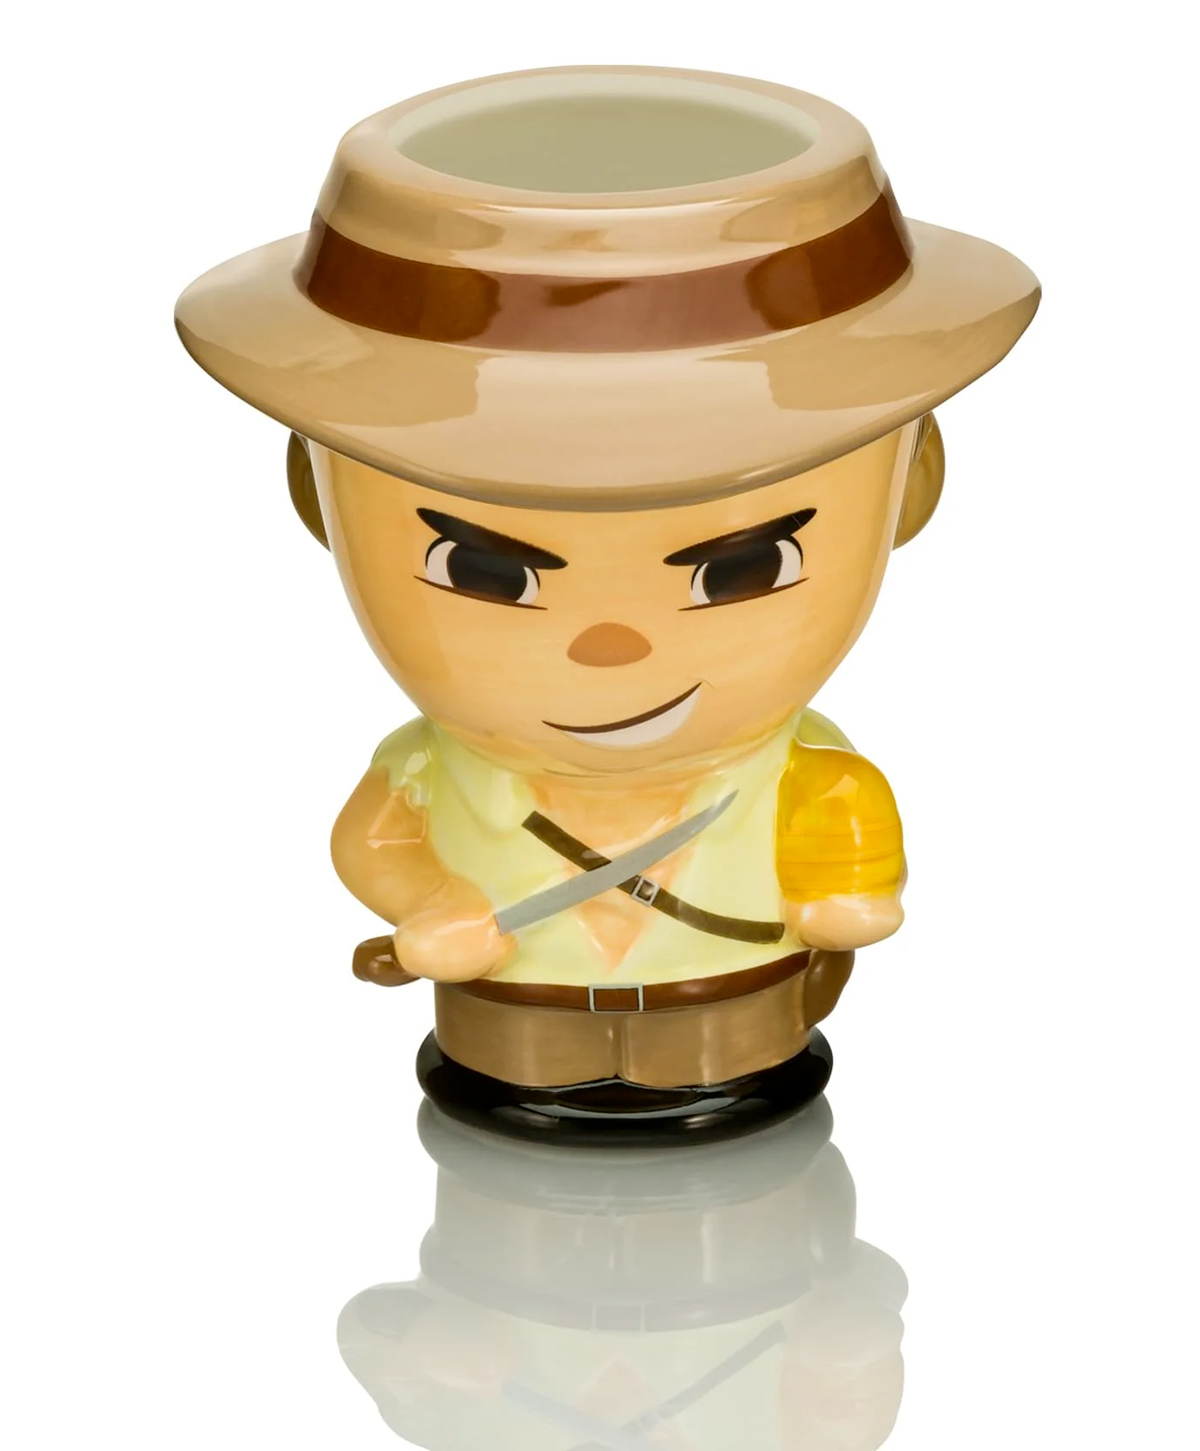 Canecas Esculpidas Indiana Jones “Cupful of Cute” com Henry Jones, Marion e Short Round